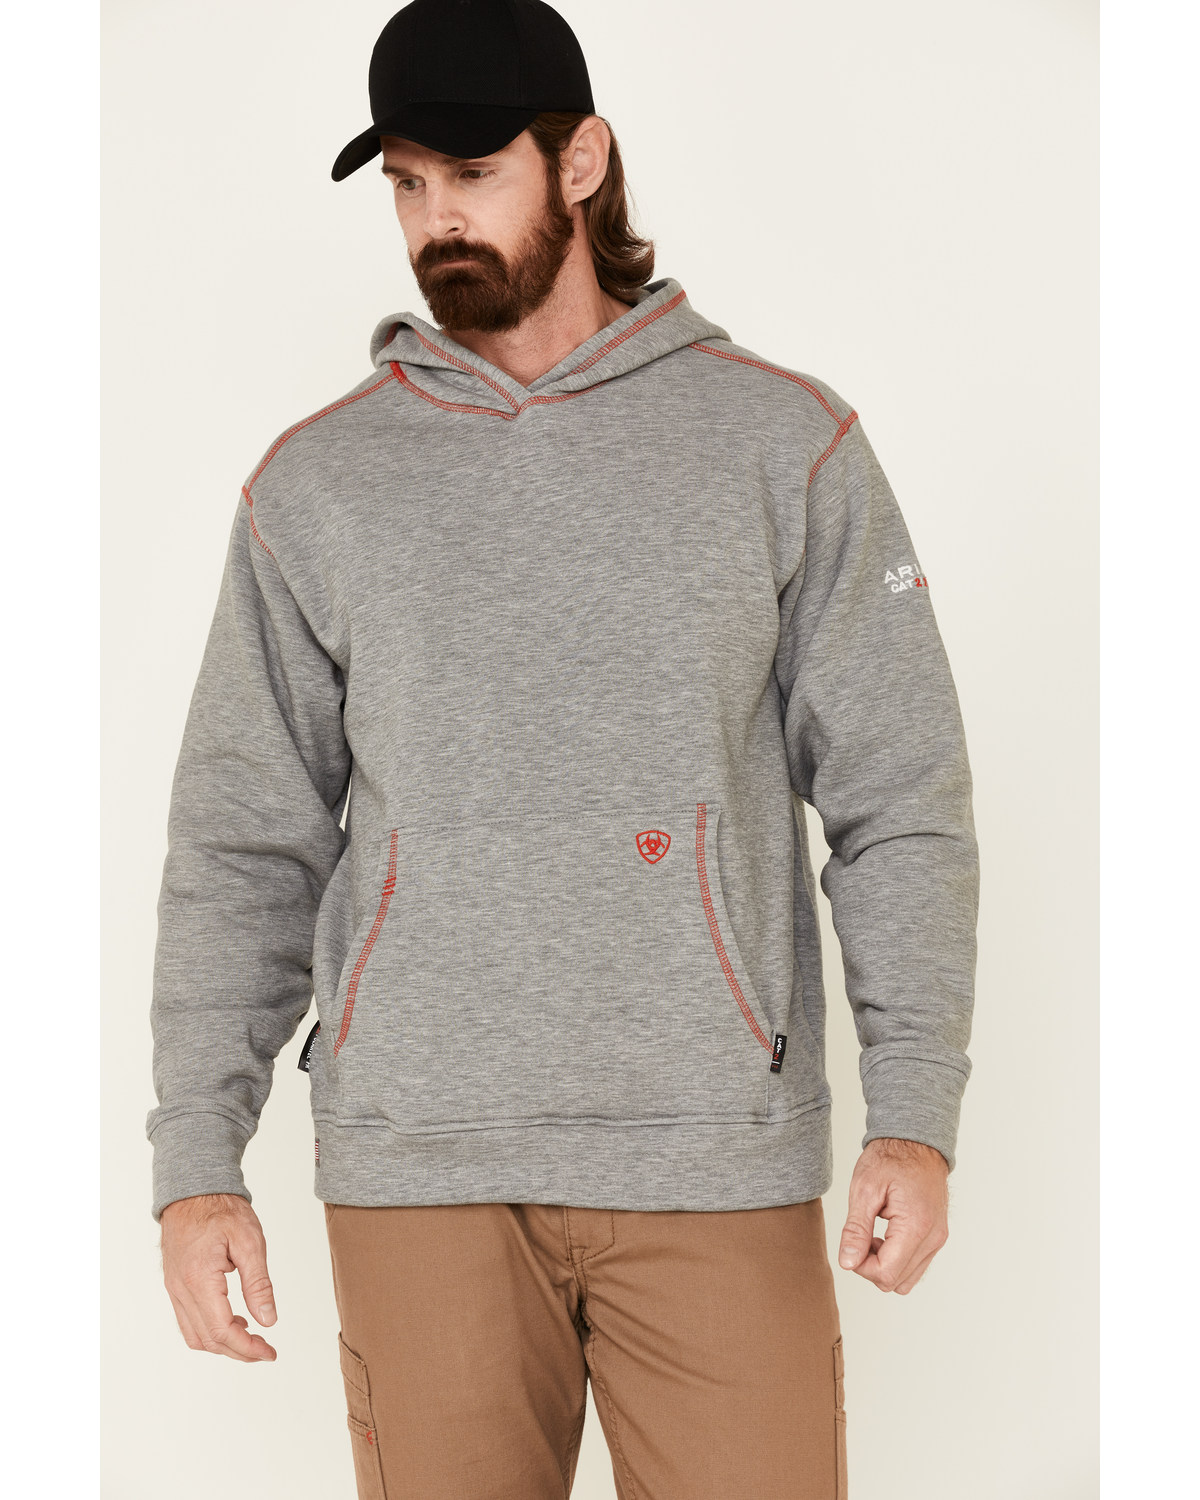 Ariat Men's Flame Resistant Polartec Hooded Work Sweatshirt